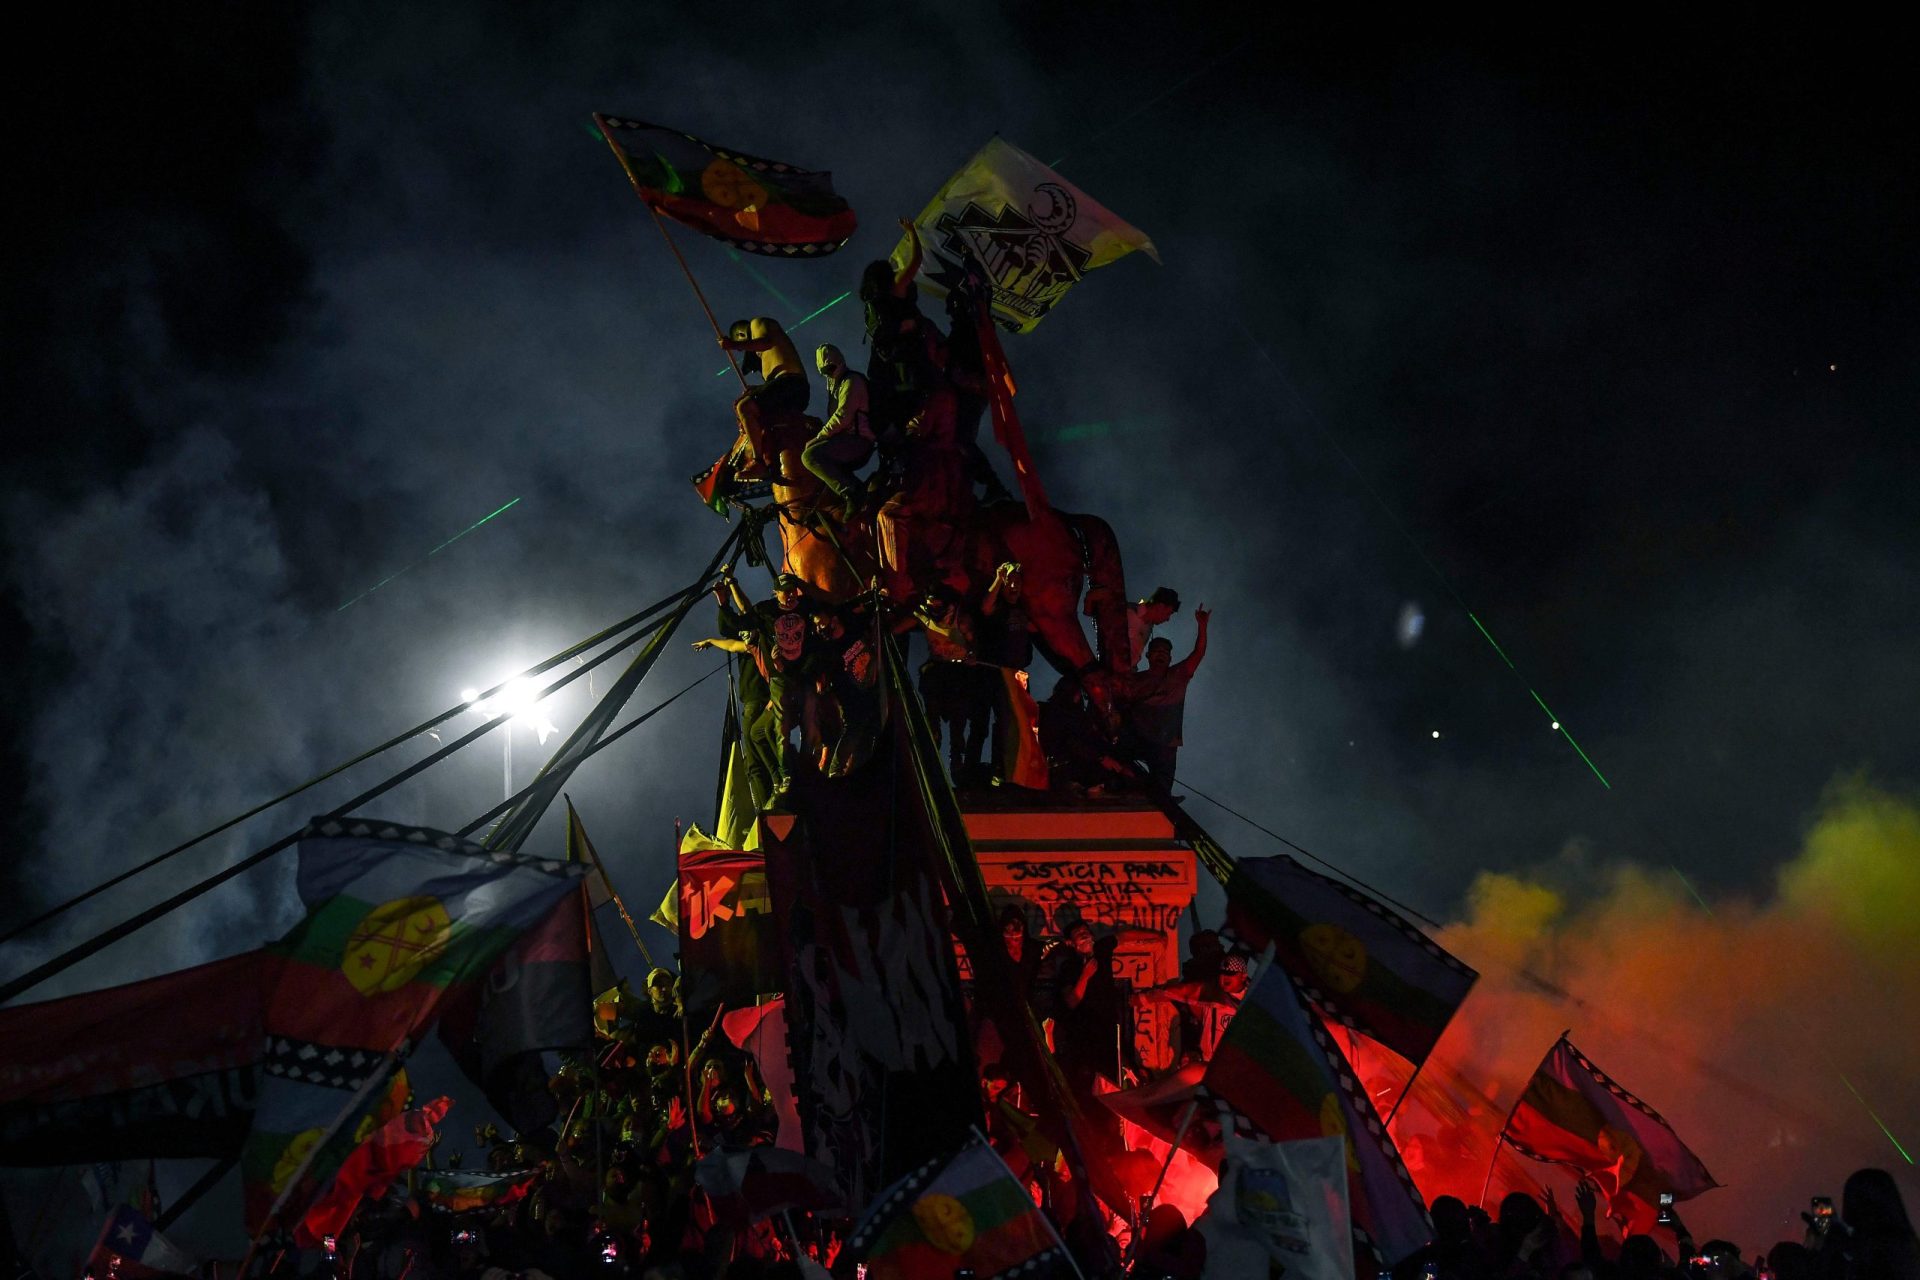 Chilenos festejaram o fim da constituição de Pinochet